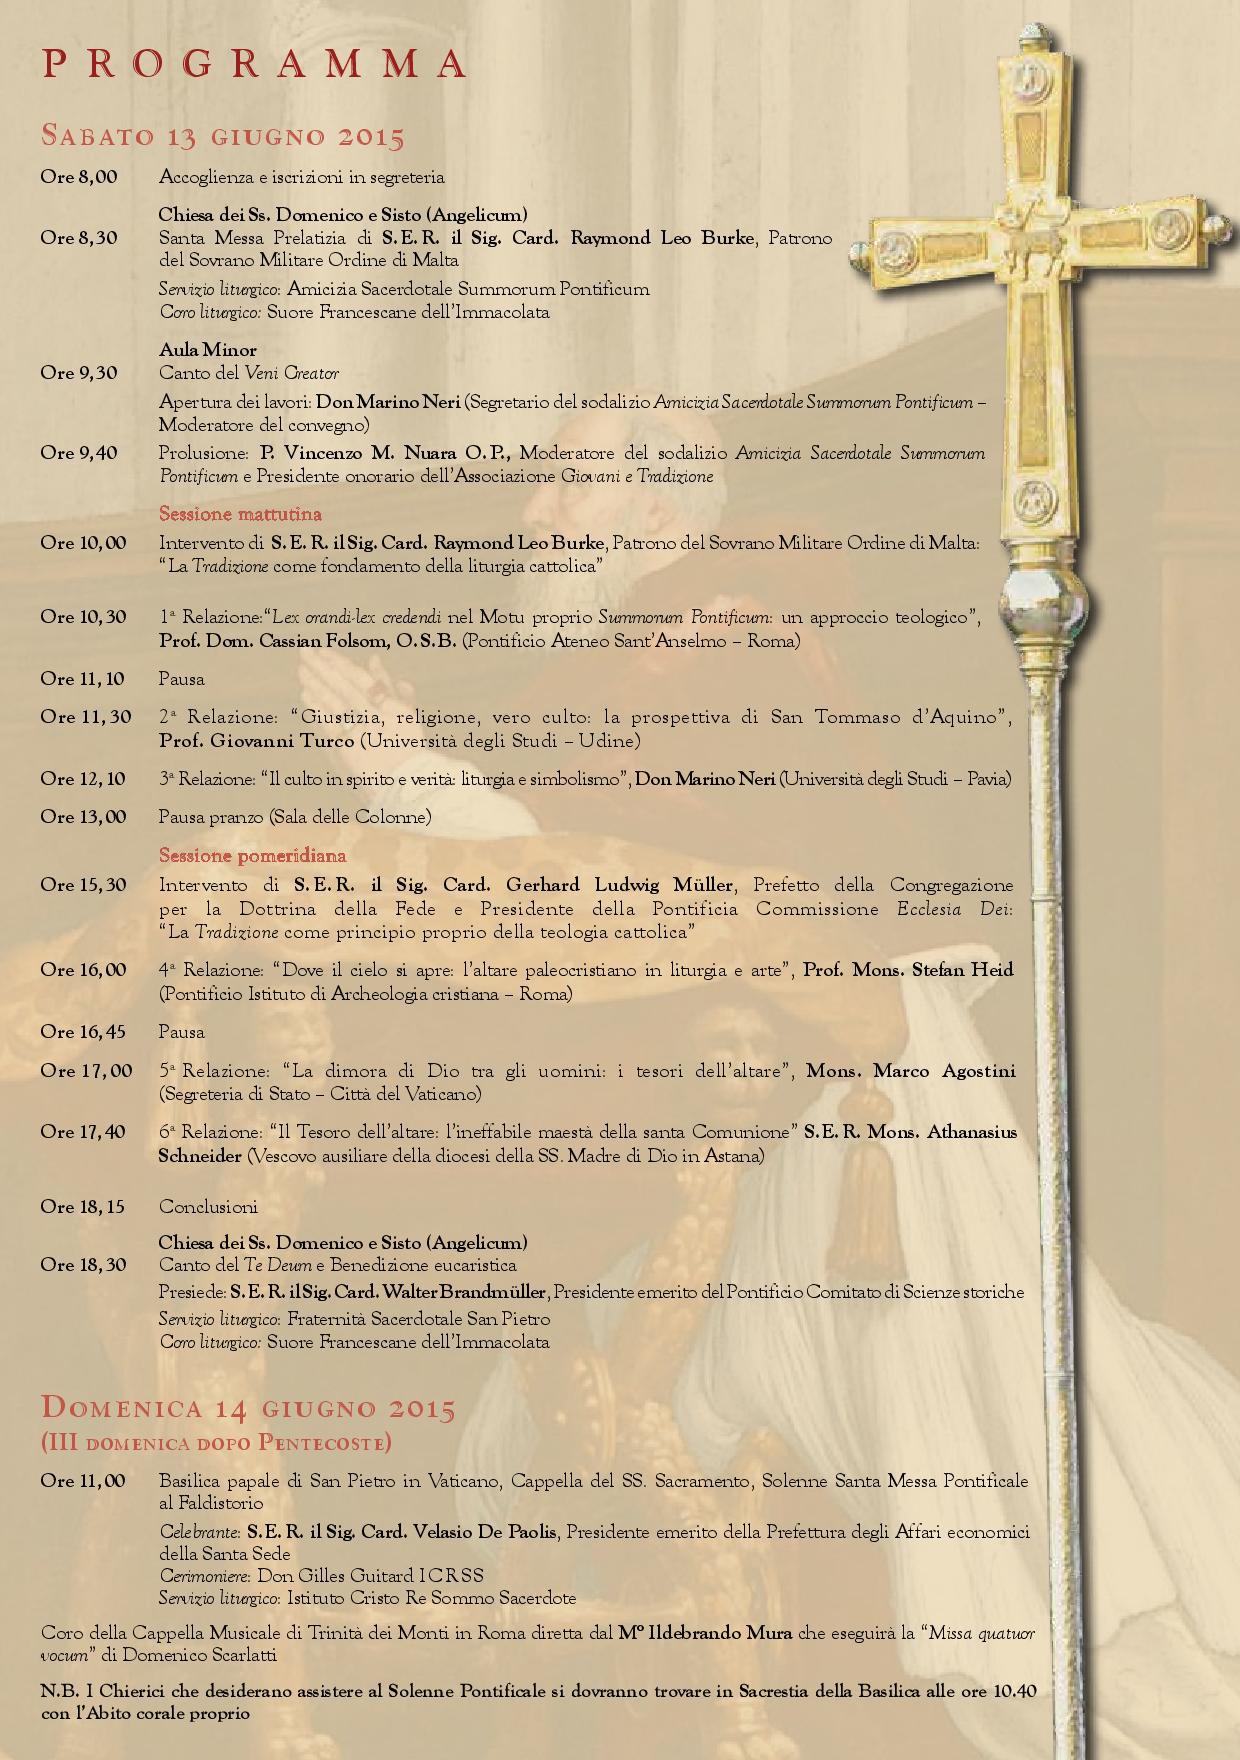 Programma IV Convegno sul Summorum Pontificum, Roma 13-14 giugno 2015